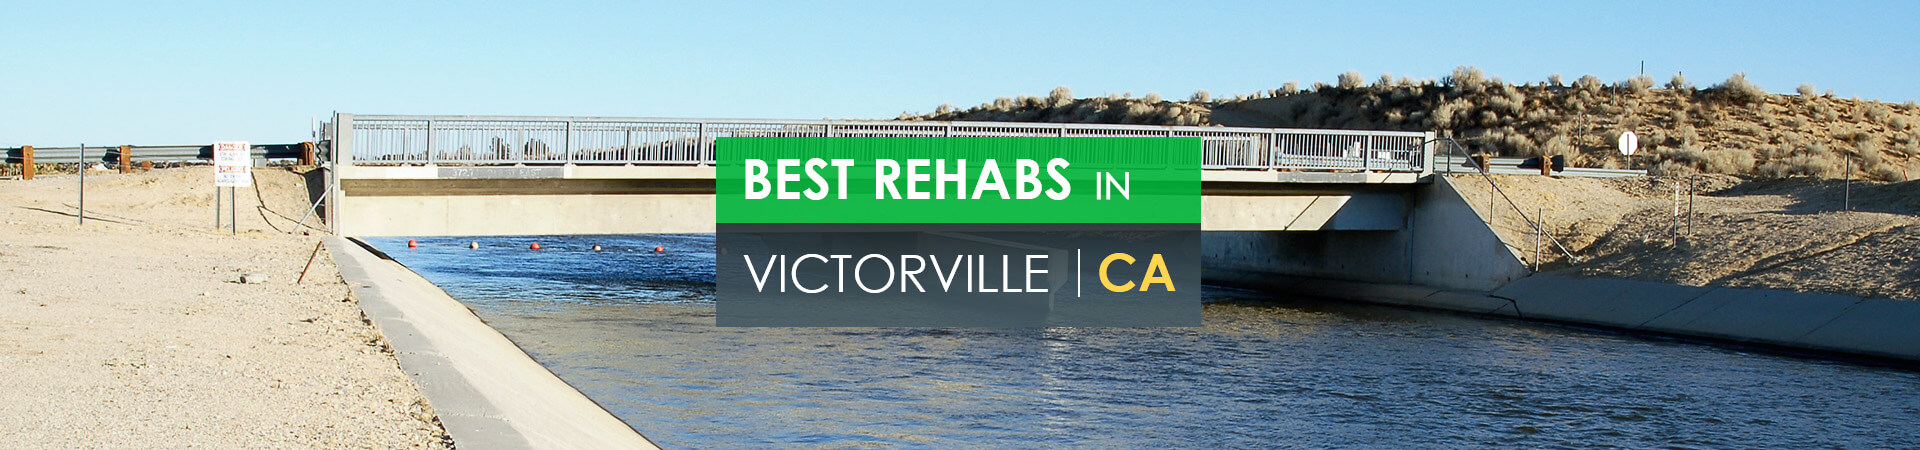 Best rehabs in Victorville, CA